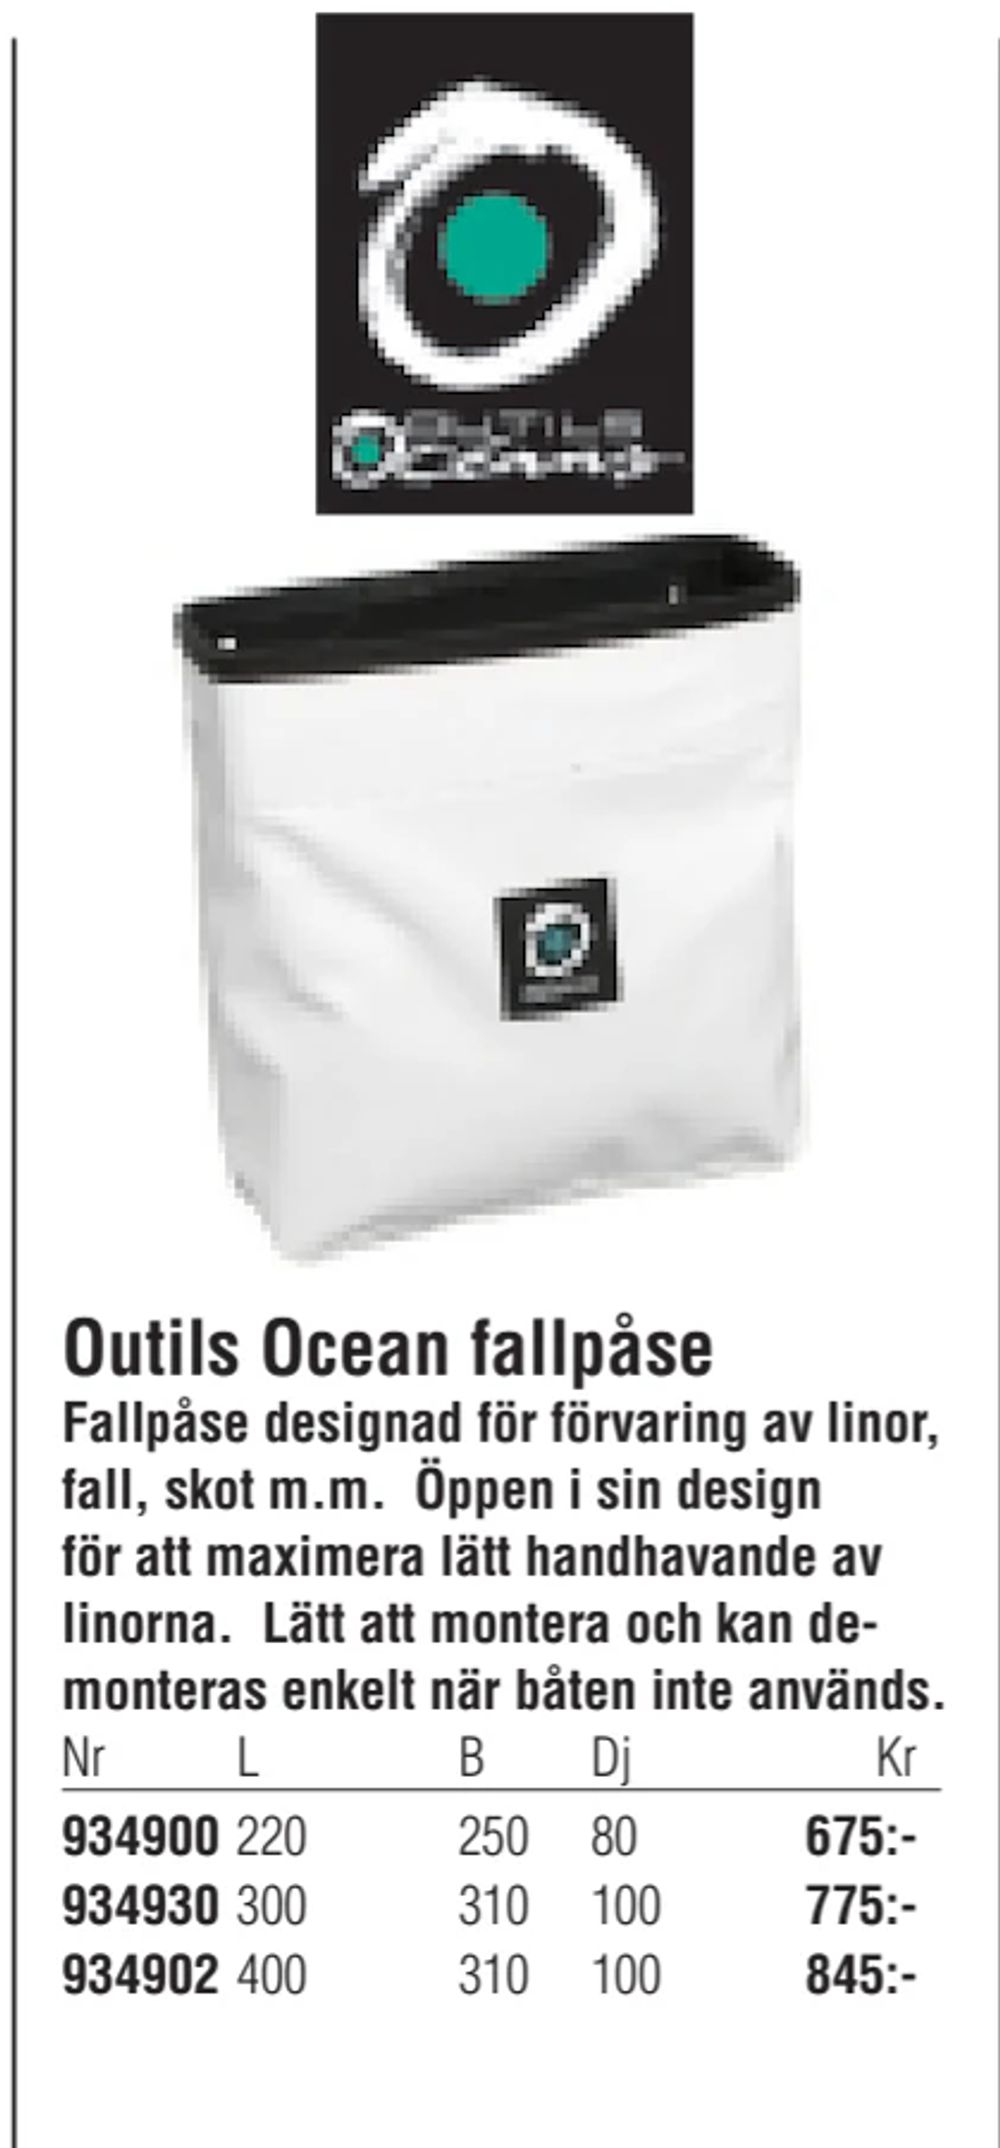 Erbjudanden på Outils Ocean fallpåse från Erlandsons Brygga för 675 kr